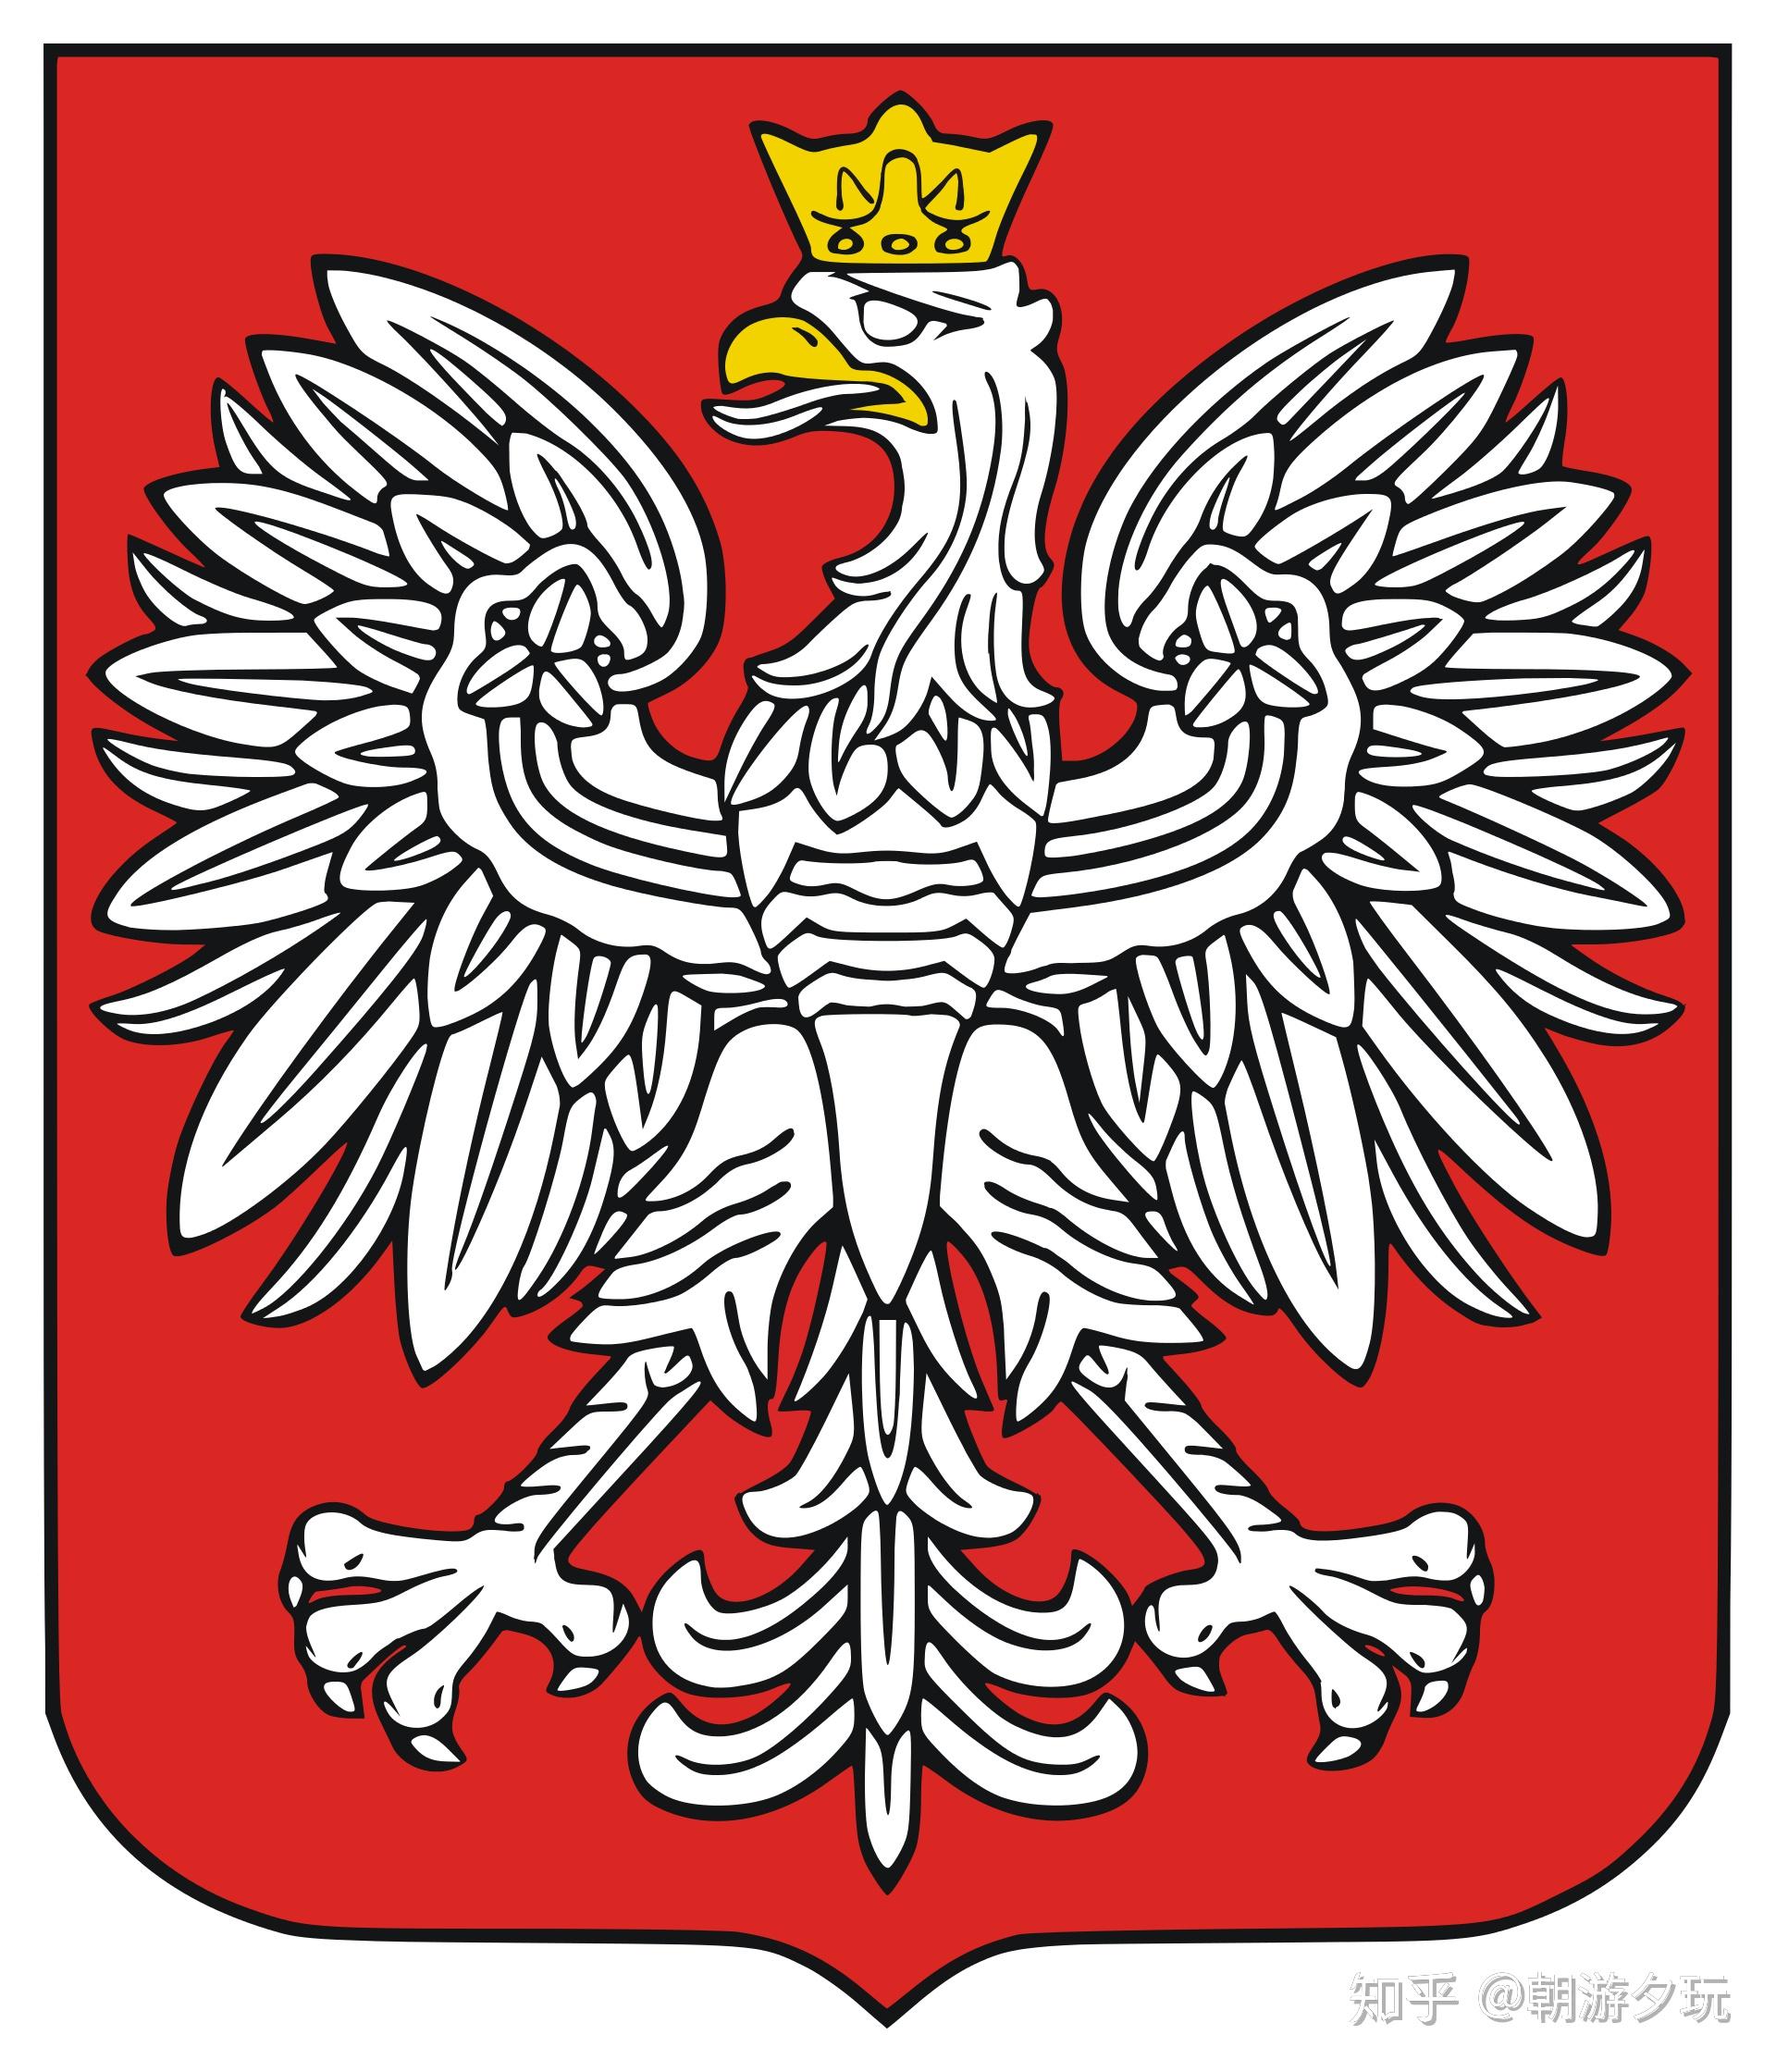 纹章,这个形象在后来一直贯穿整个波兰的历史,无论是波兰立陶宛联邦